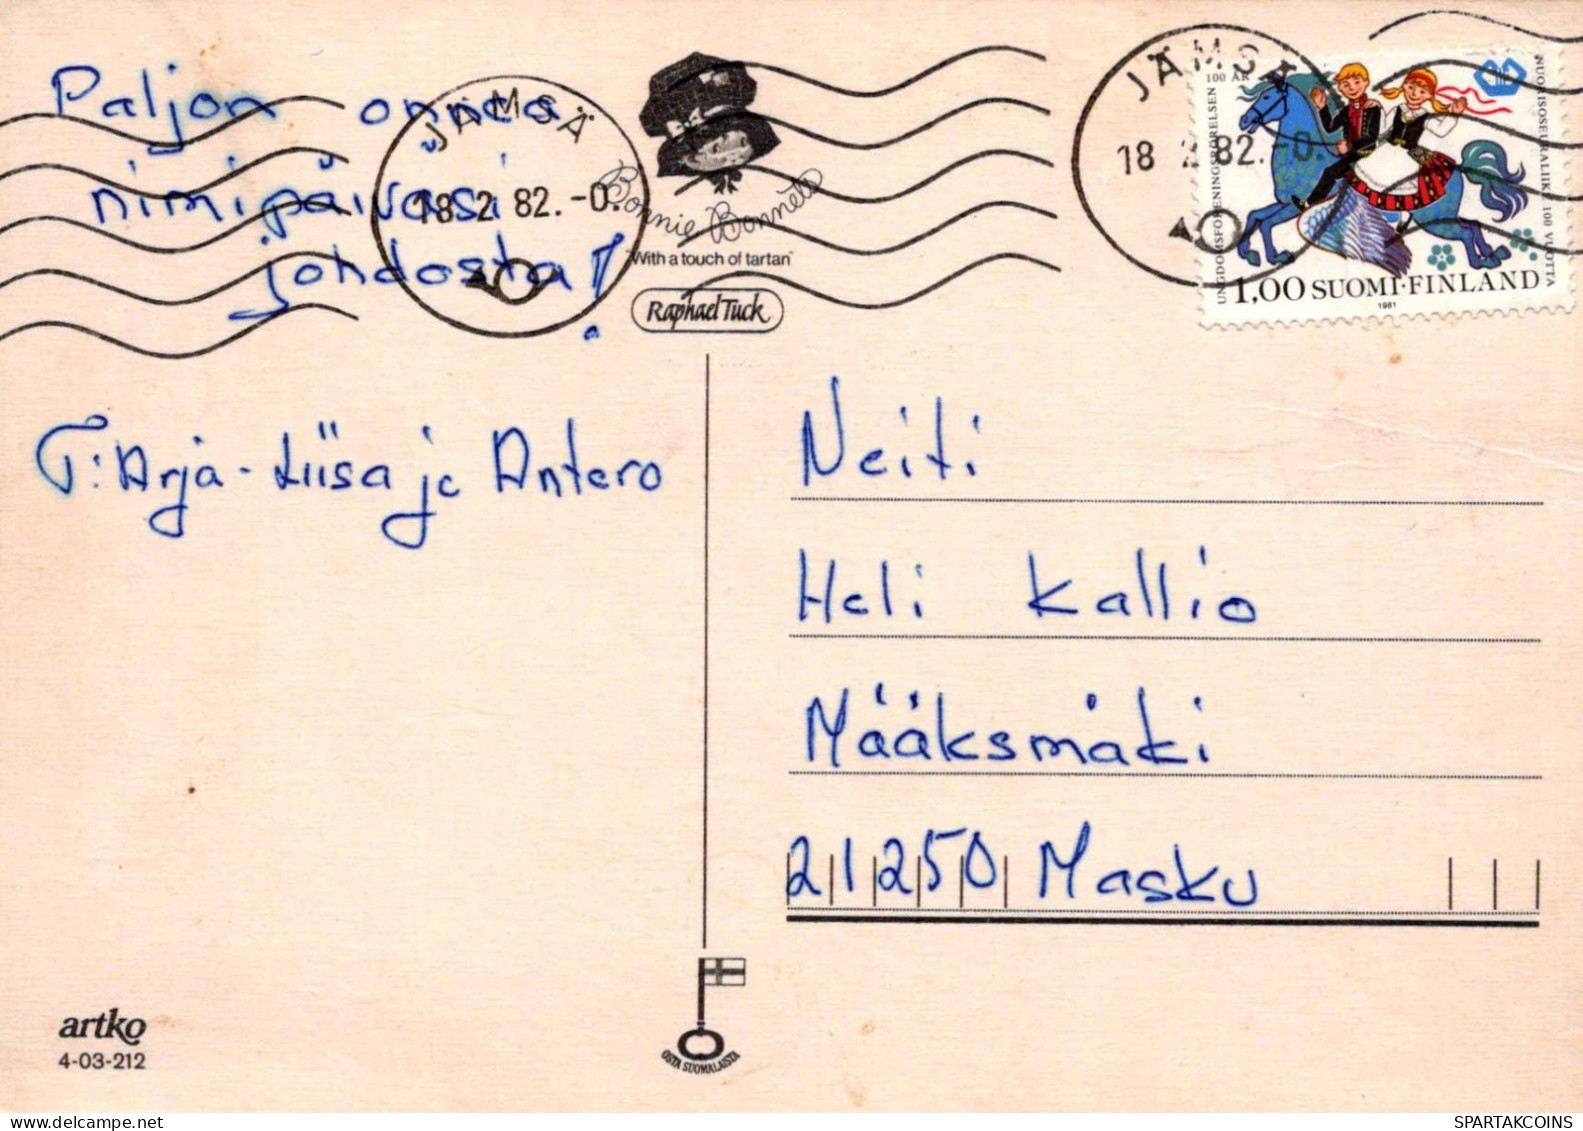 NIÑOS Escenas Paisajes Vintage Tarjeta Postal CPSM #PBT687.A - Escenas & Paisajes